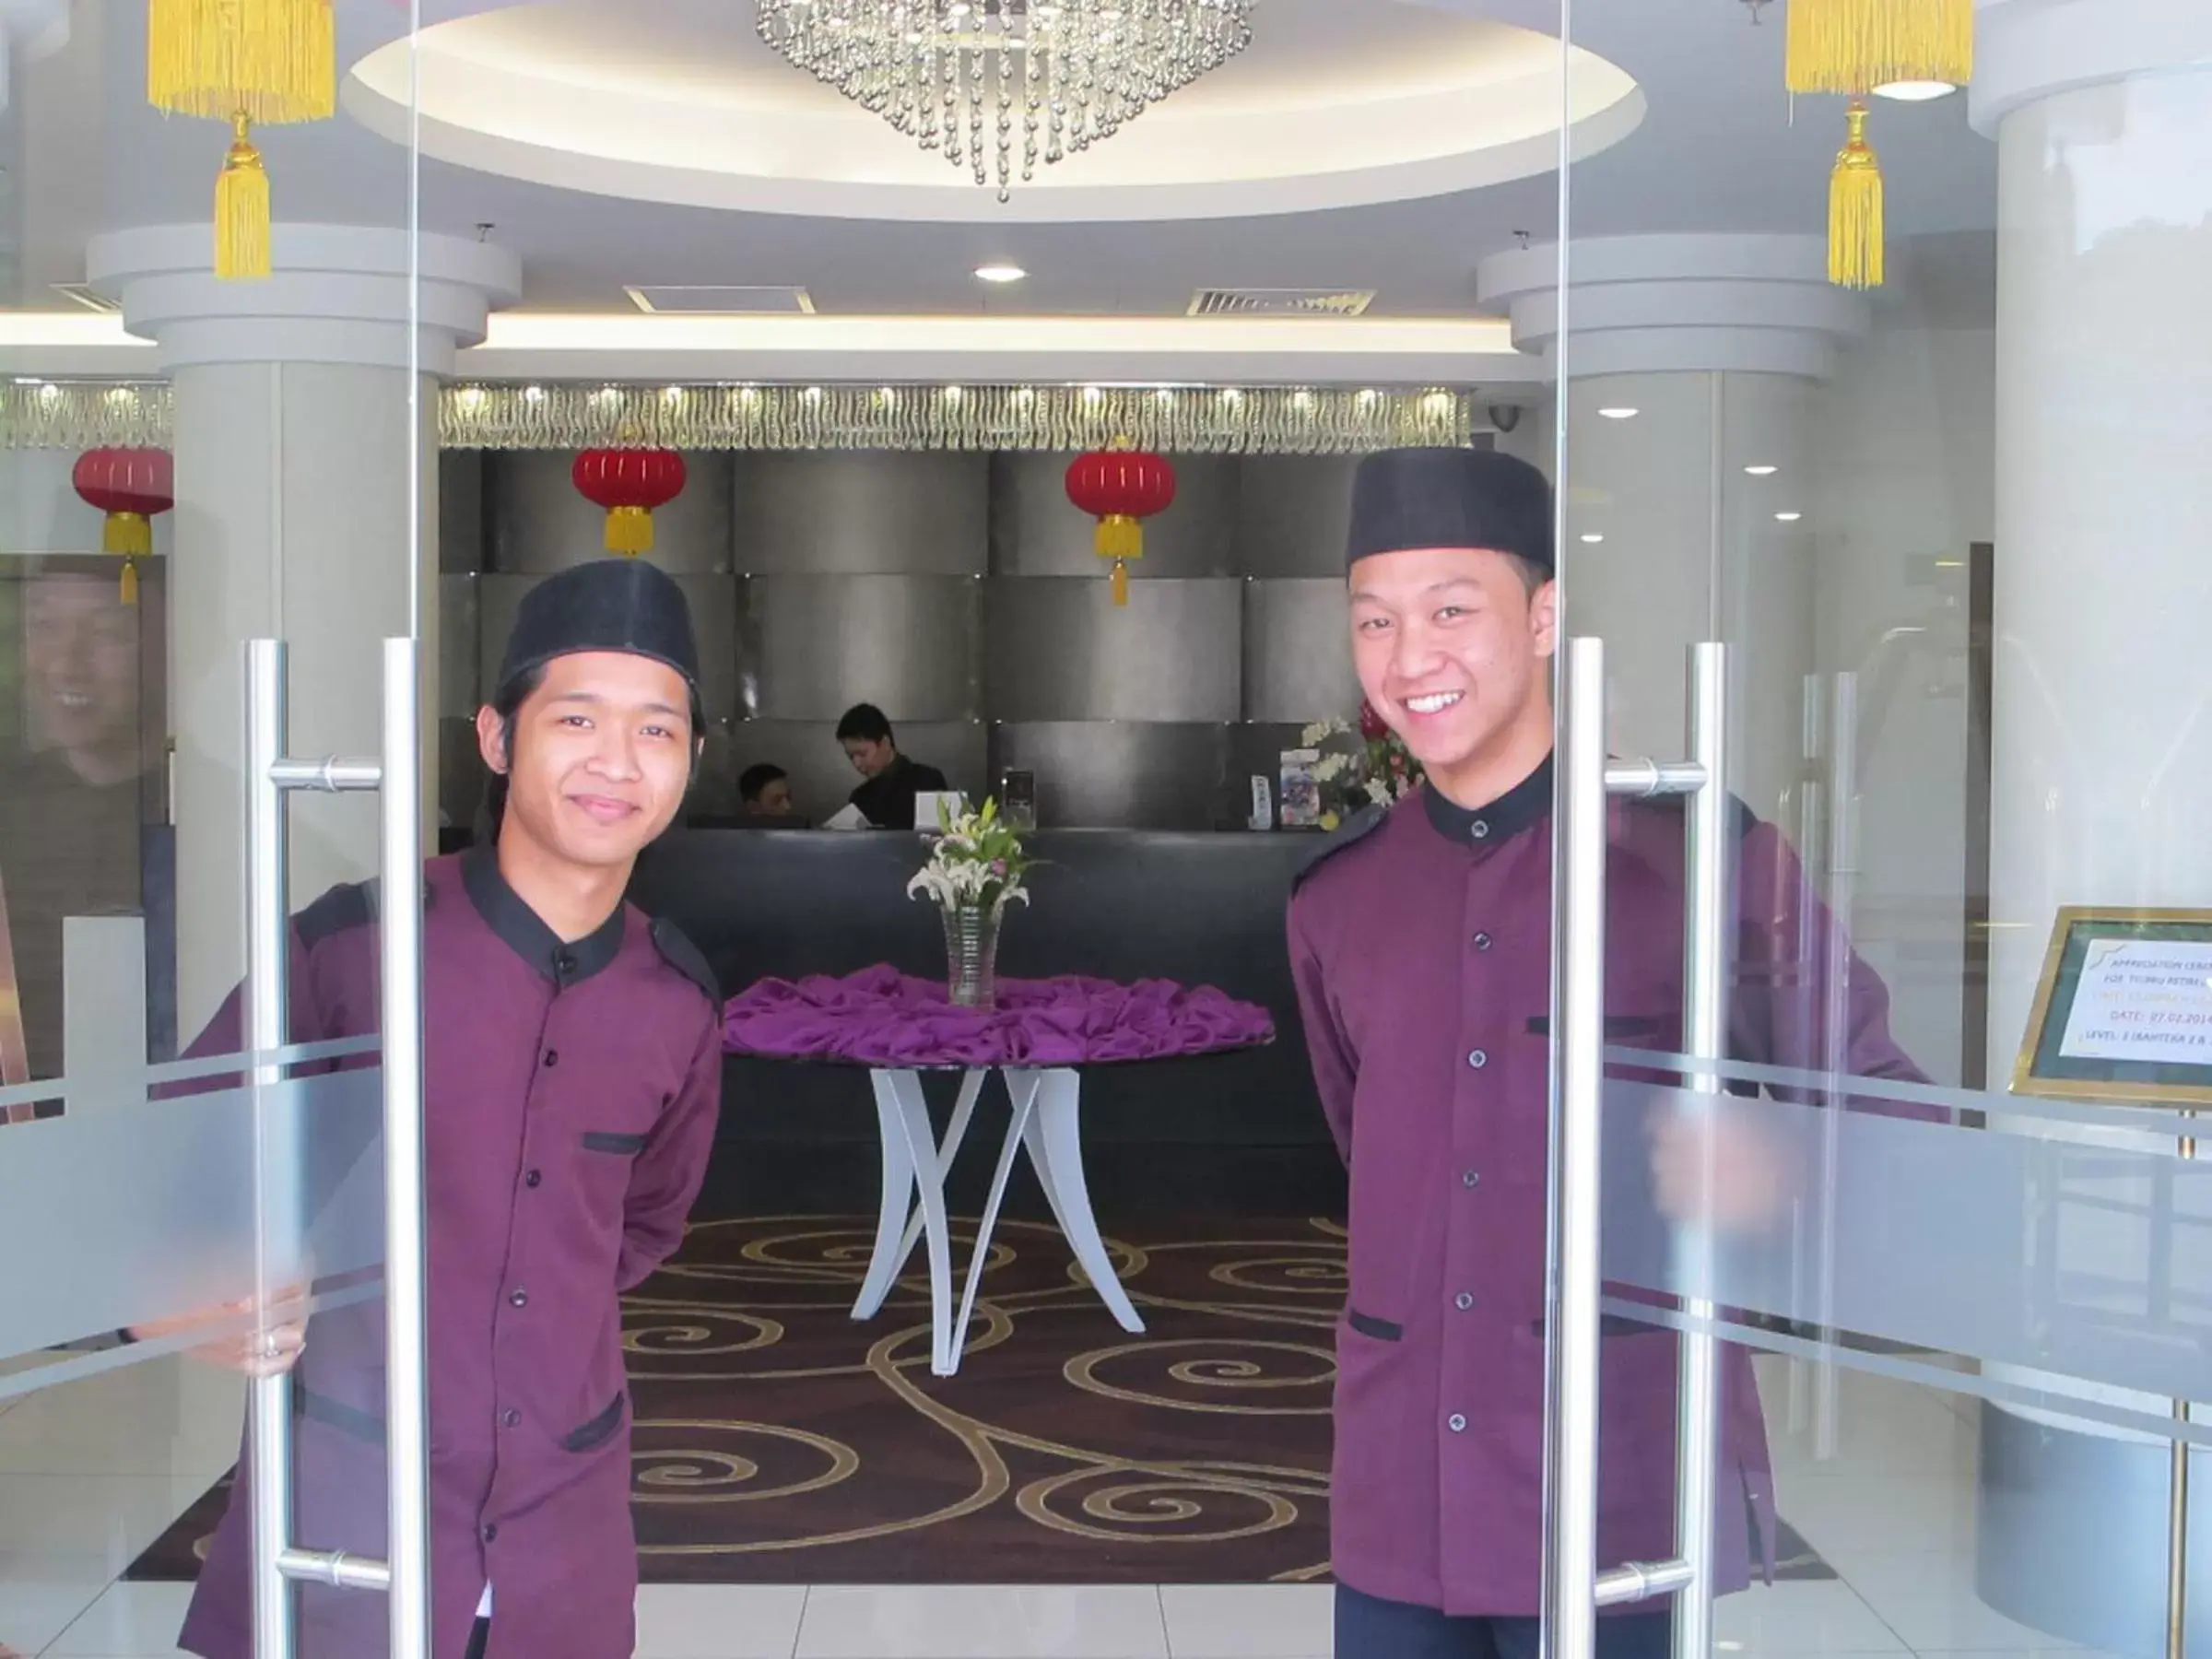 Lobby or reception in Badi'ah Hotel